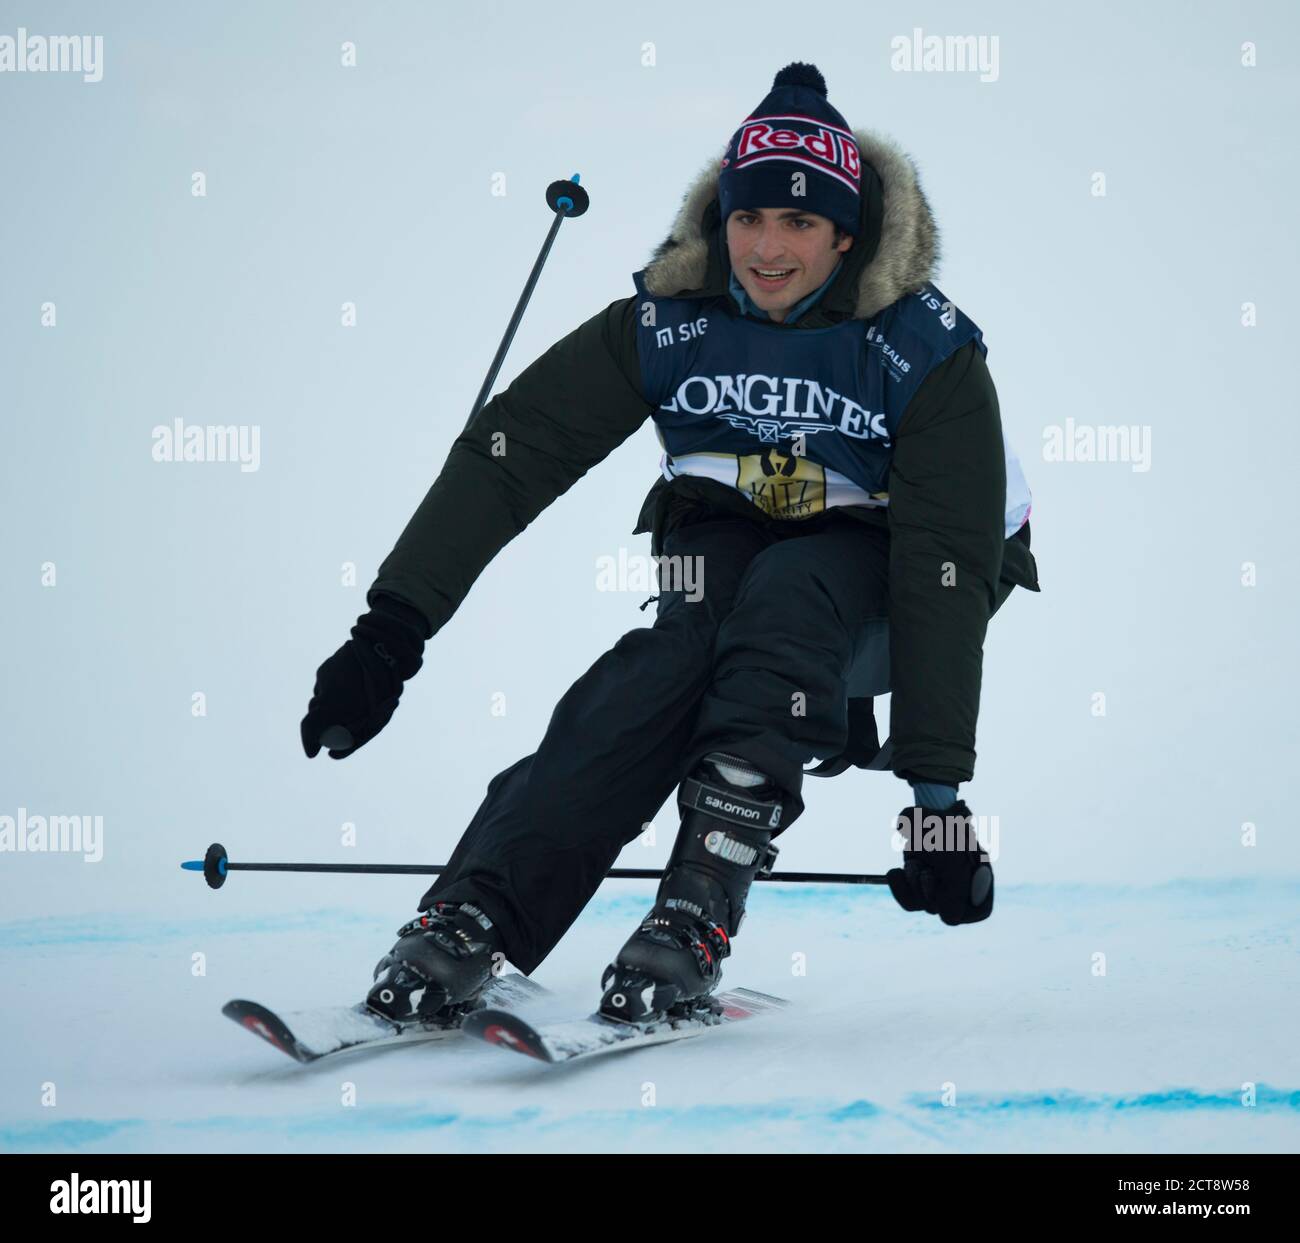 Carlos Sainz participe à la course de ski de la Charité “Kitz Trophy” à Kitzbuhel, en Autriche. Crédit photo : Mark pain / Alamy Banque D'Images